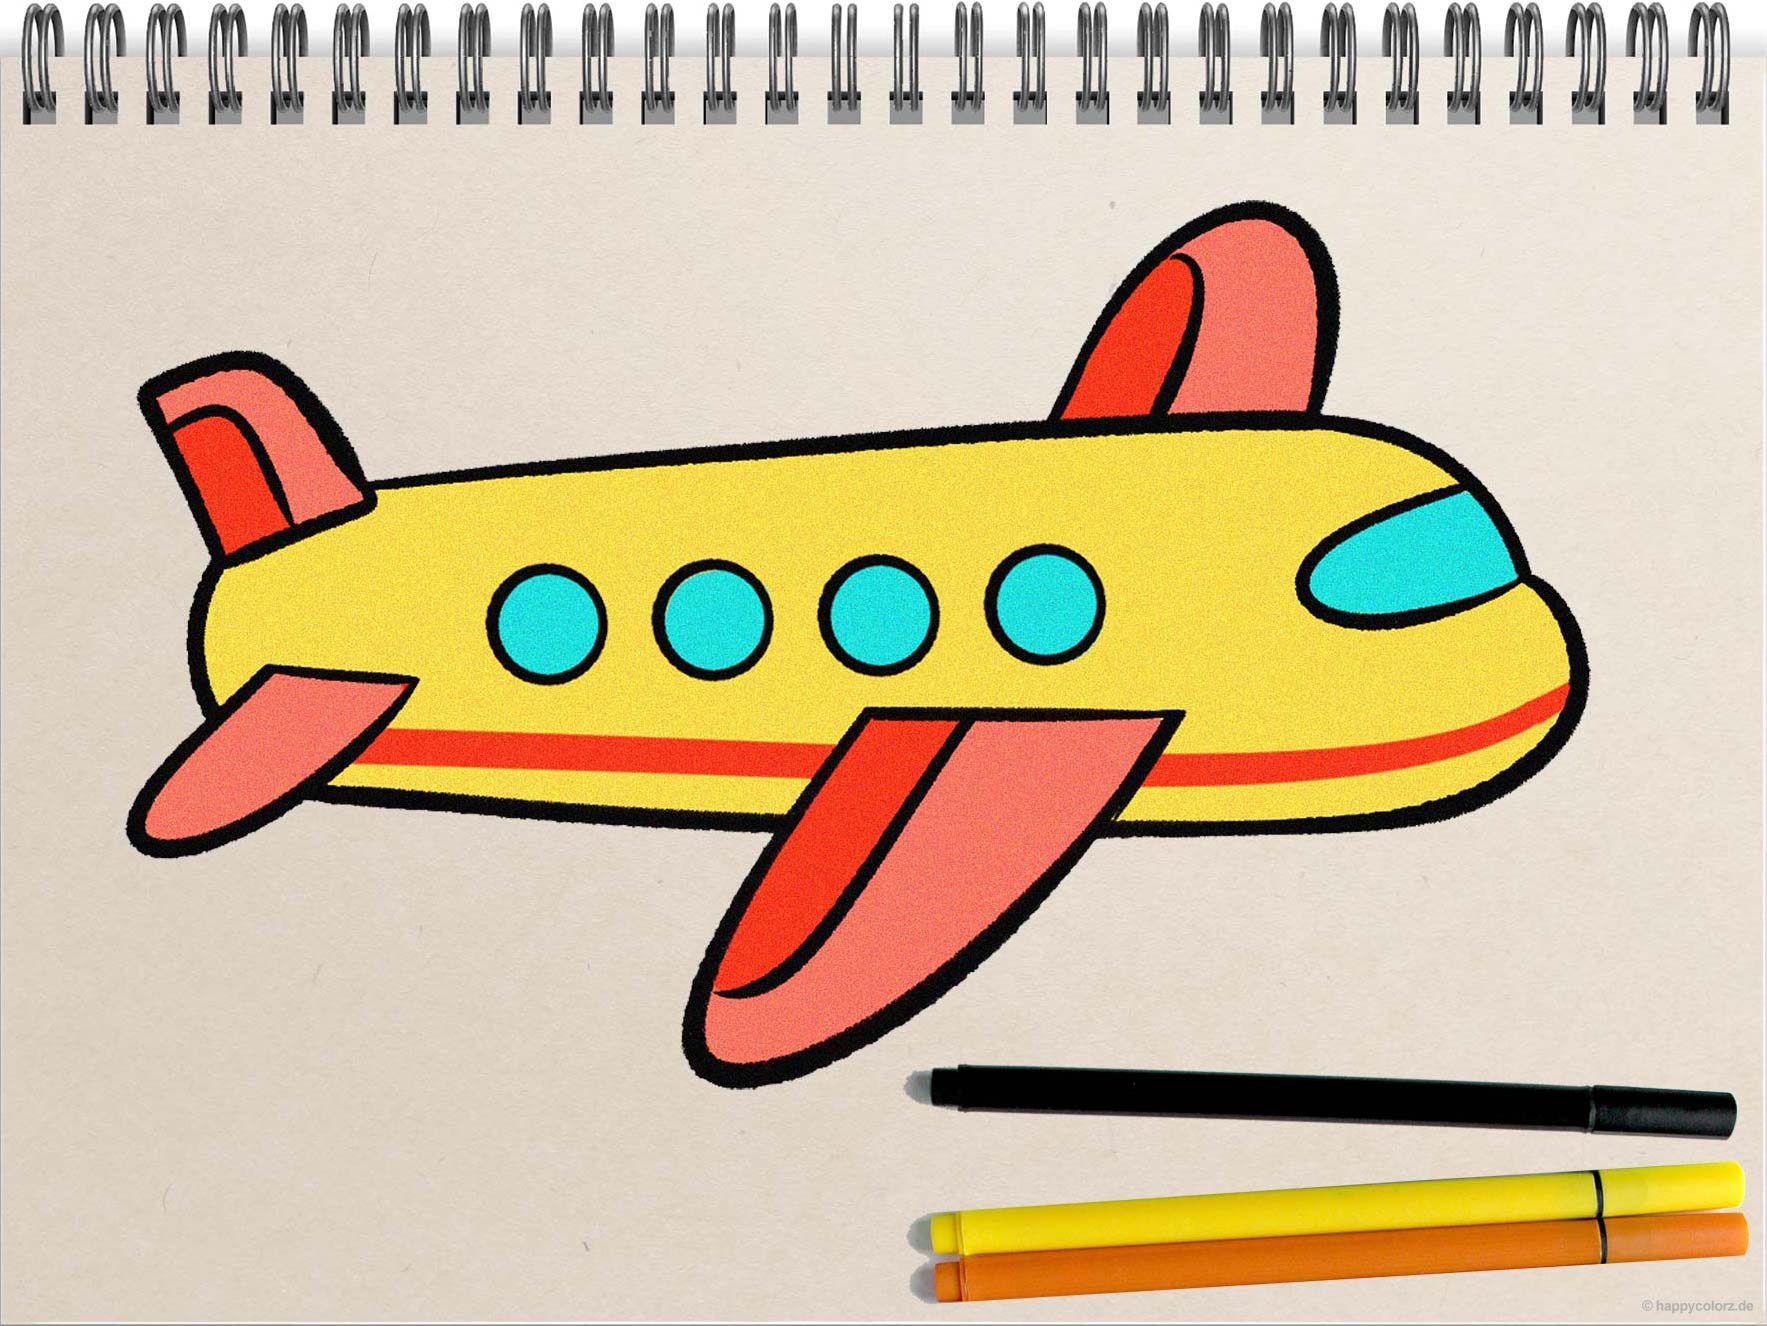 Flugzeug malen (einfach)- Schritt-für-Schritt Anleitung mit Vorlagen